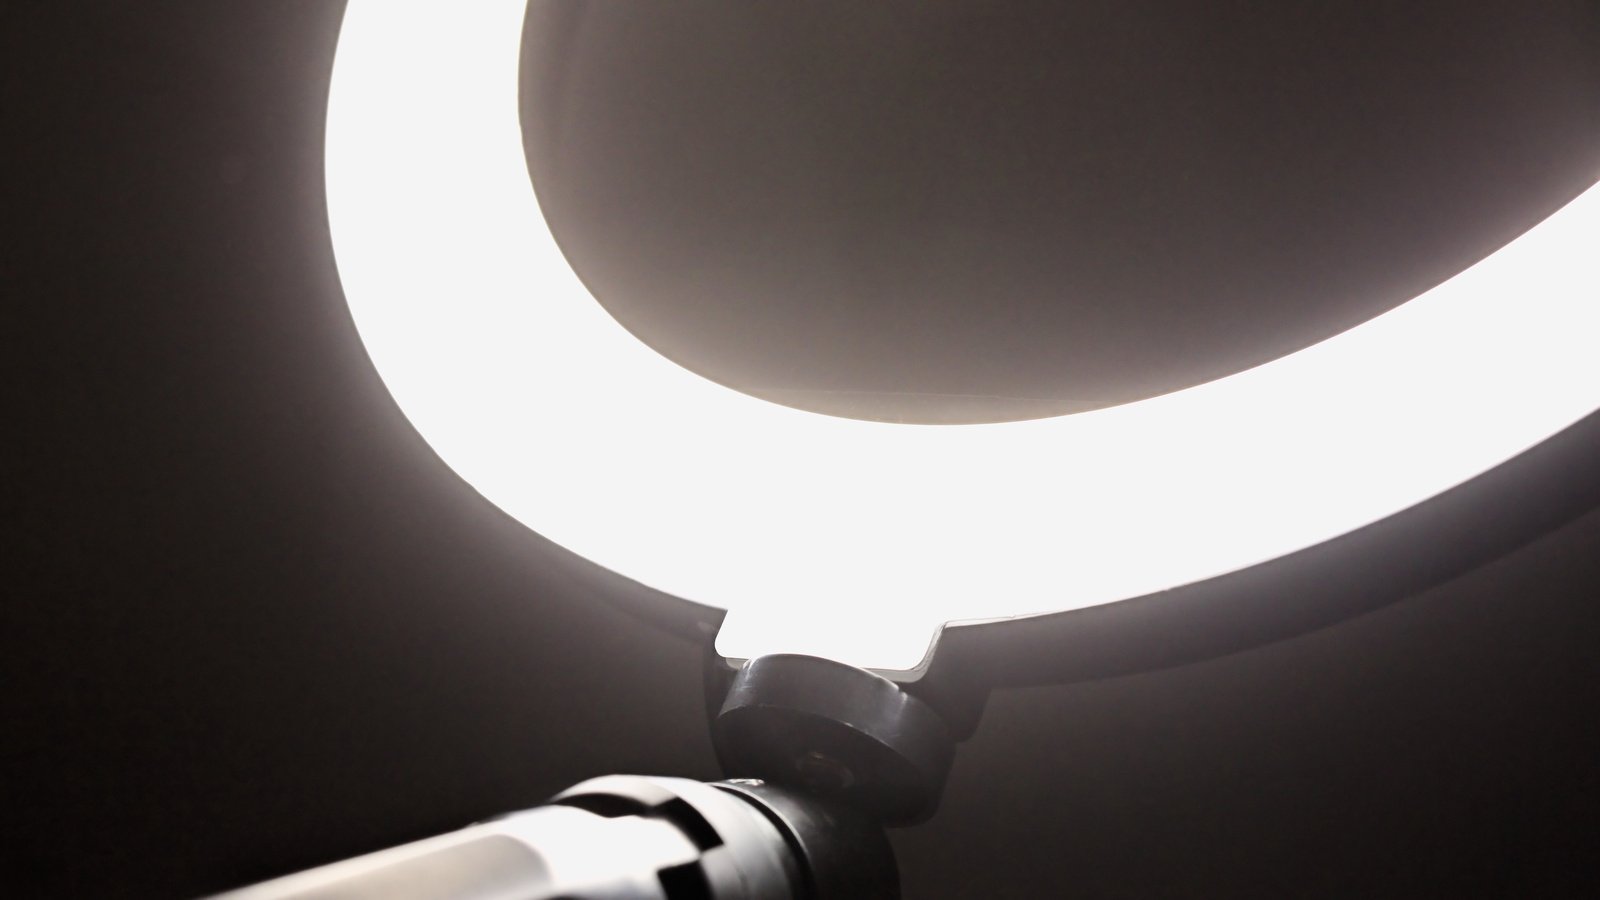 Das LED Ringlicht macht ein sehr weiches, diffuses Licht. Ideal für Portraitaufnahmen